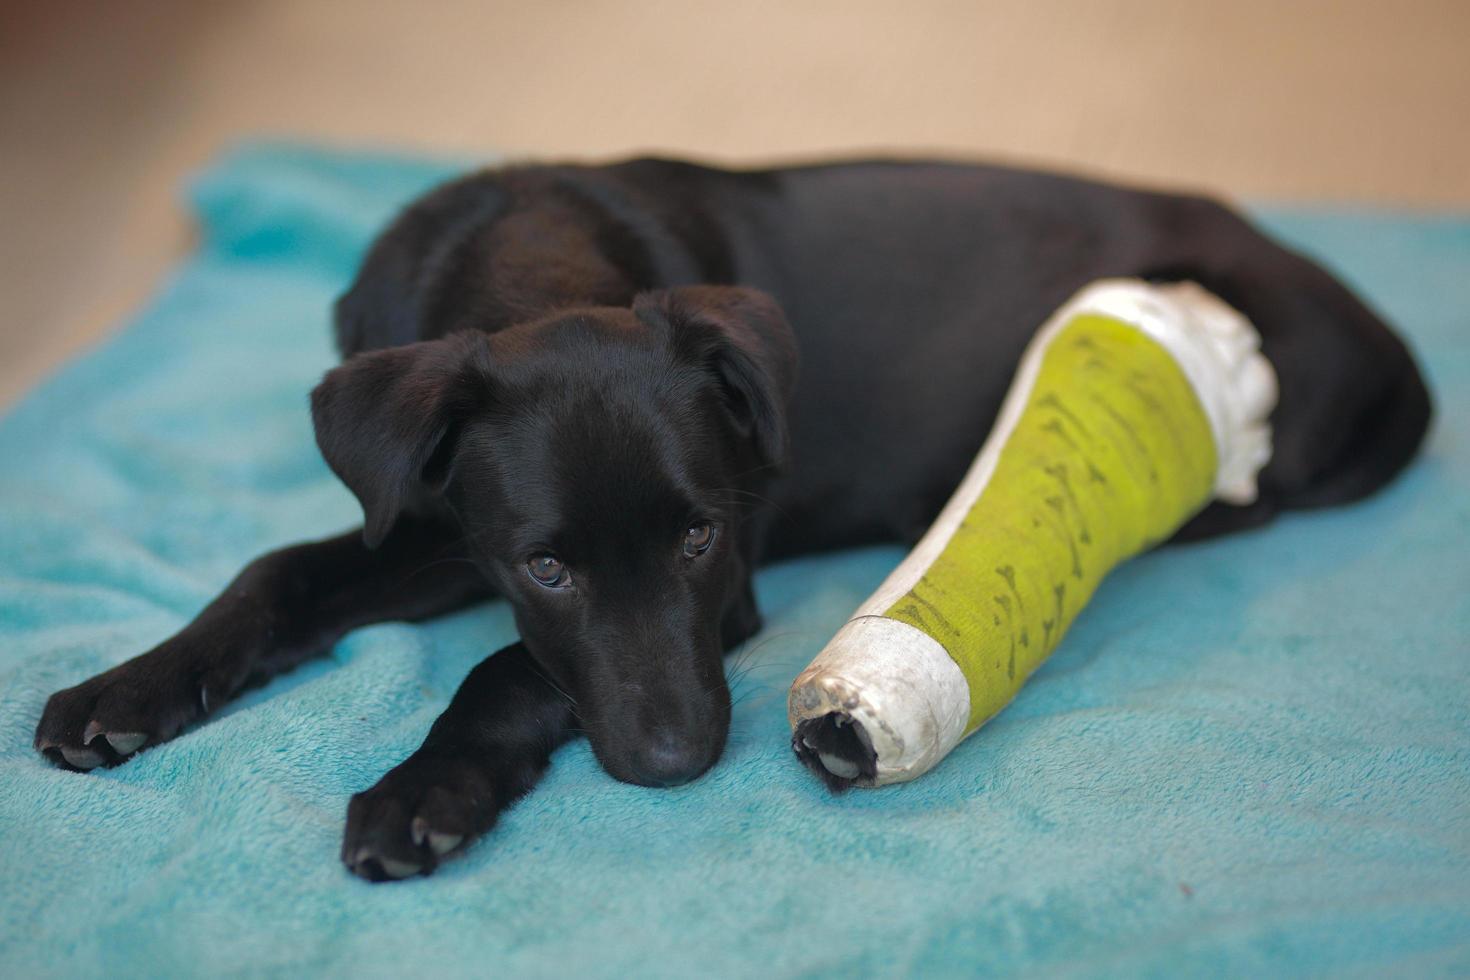 hundvalp med skadat benbrott fick första hjälpen behandling med skena efter färg grön ett besök på veterinärsjukhuset. foto